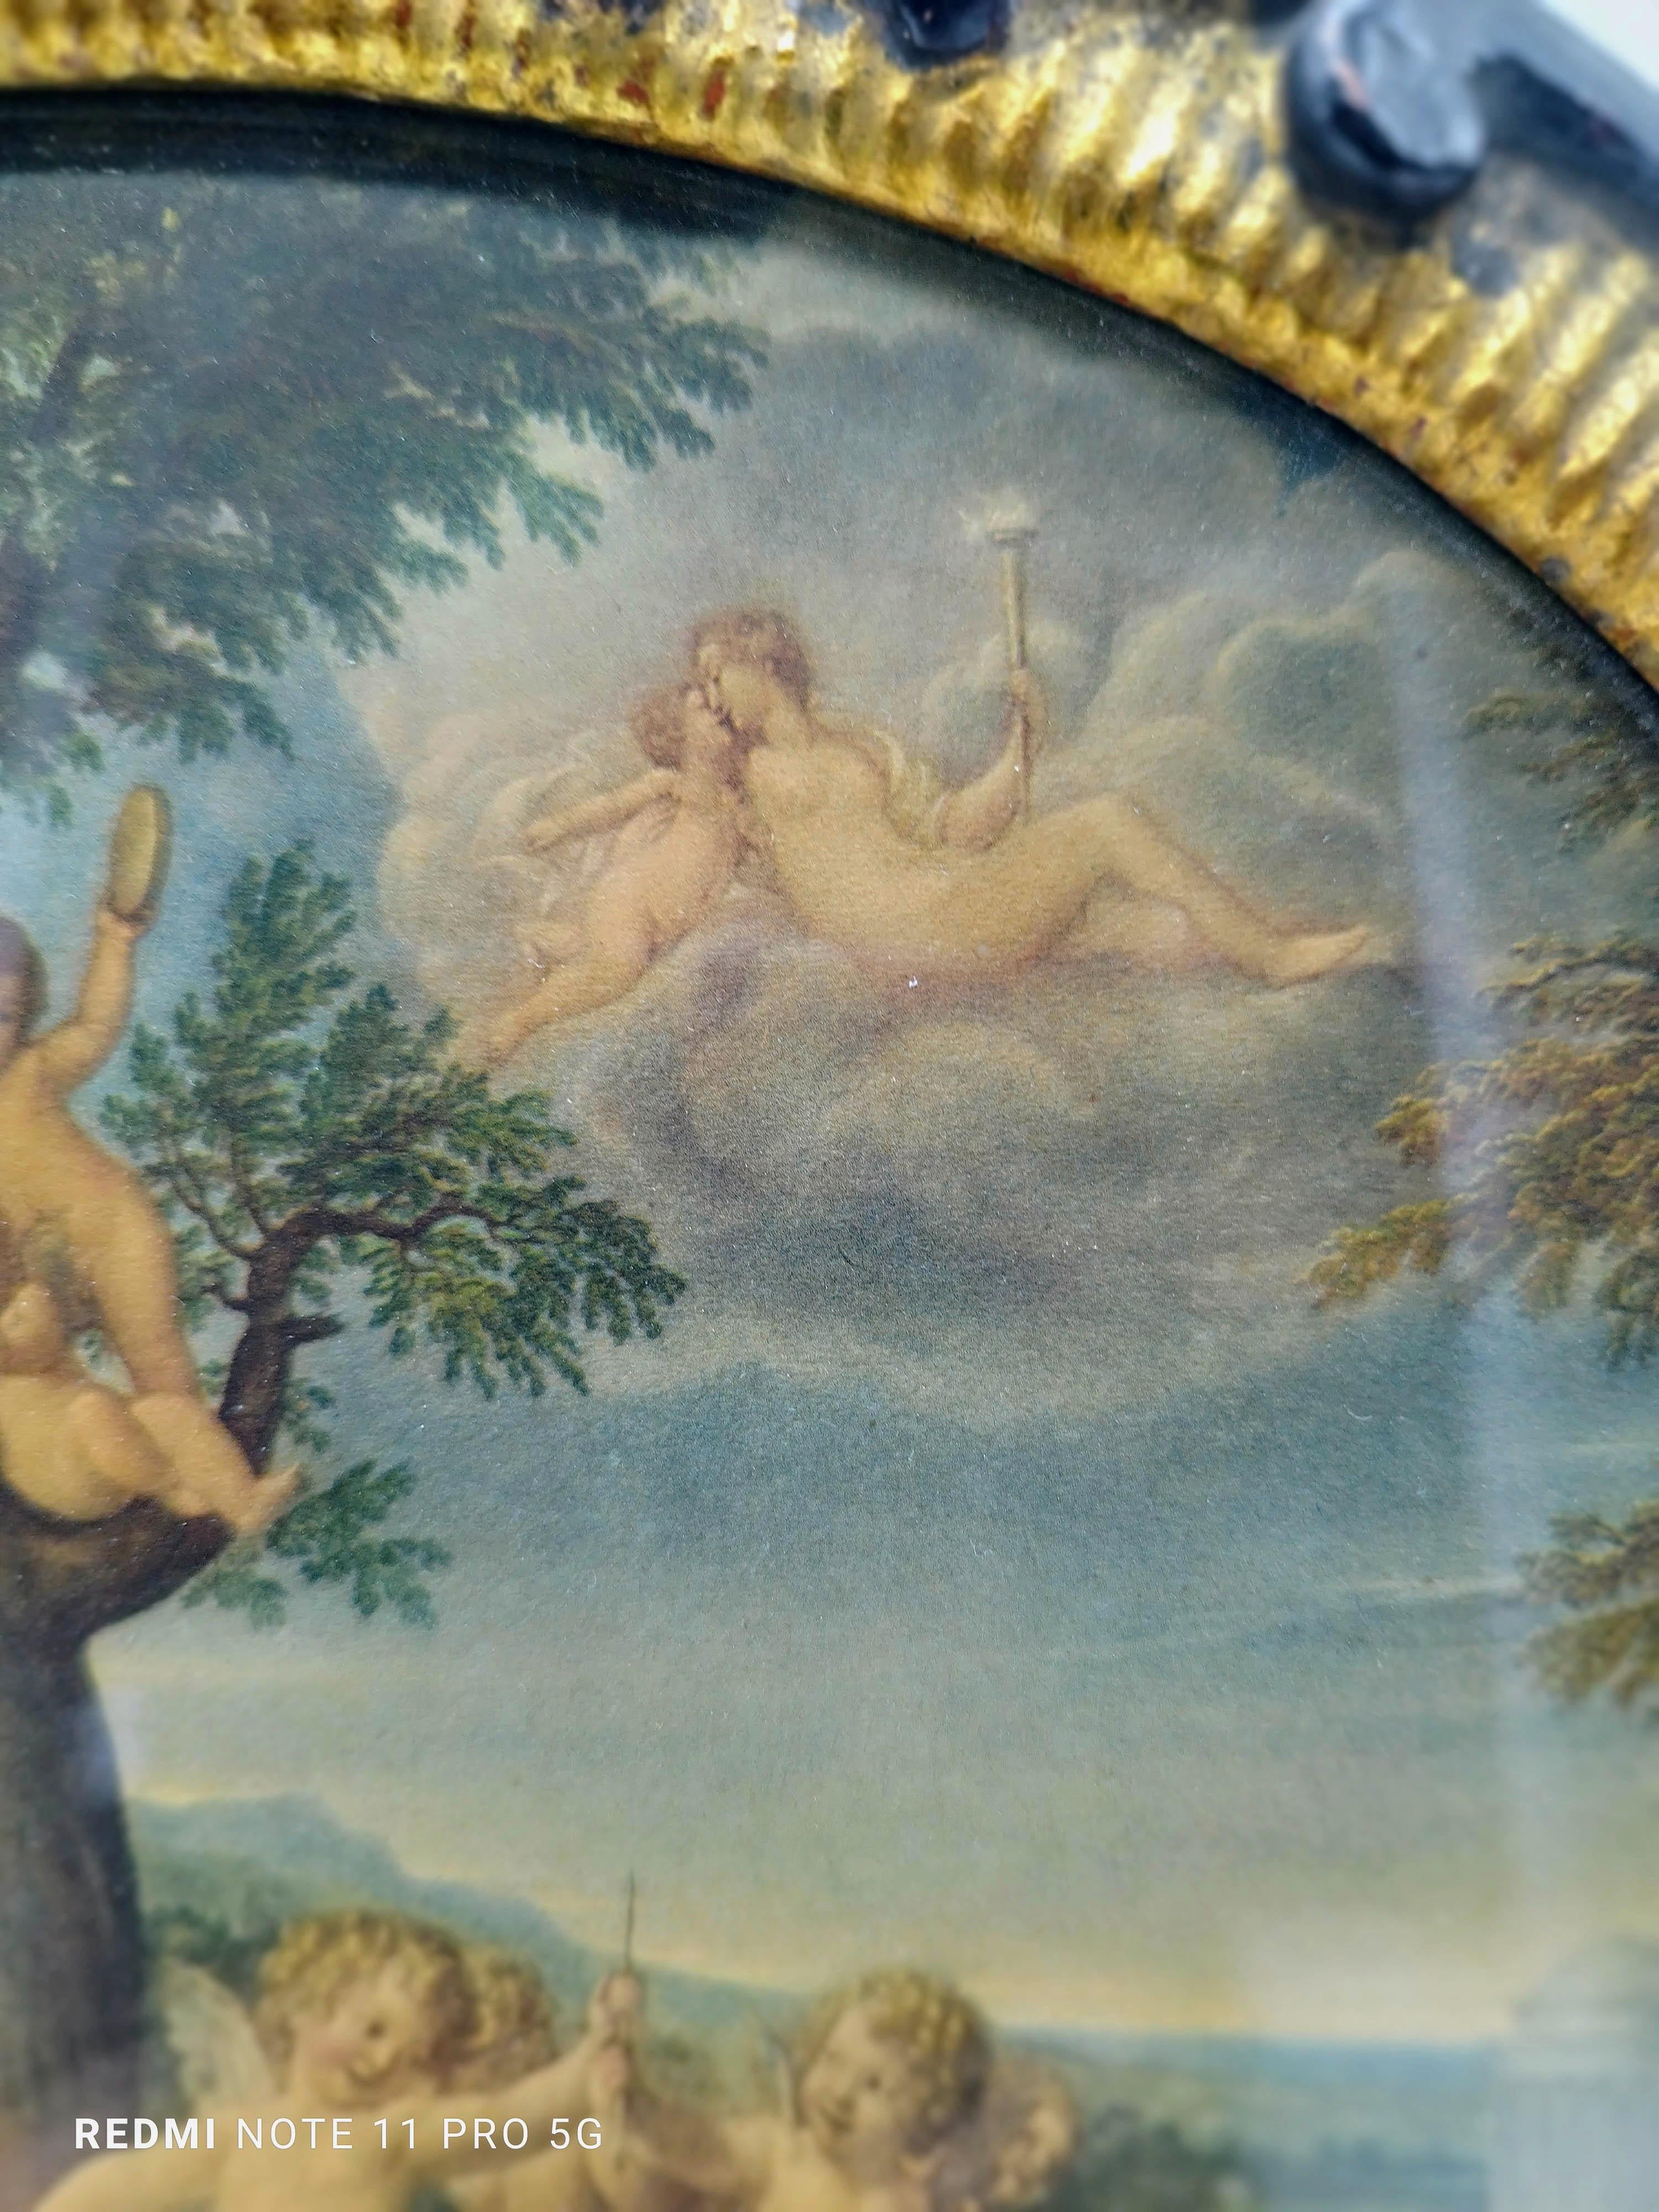 Gravure ancienne en couleur représentant la danse des Cupidons avec un cadre en bois sculpté.
Cette peinture extraordinairement raffinée et très décorative représente une allégorie du XVIIIe siècle.
Au centre et au premier plan, nous trouvons un